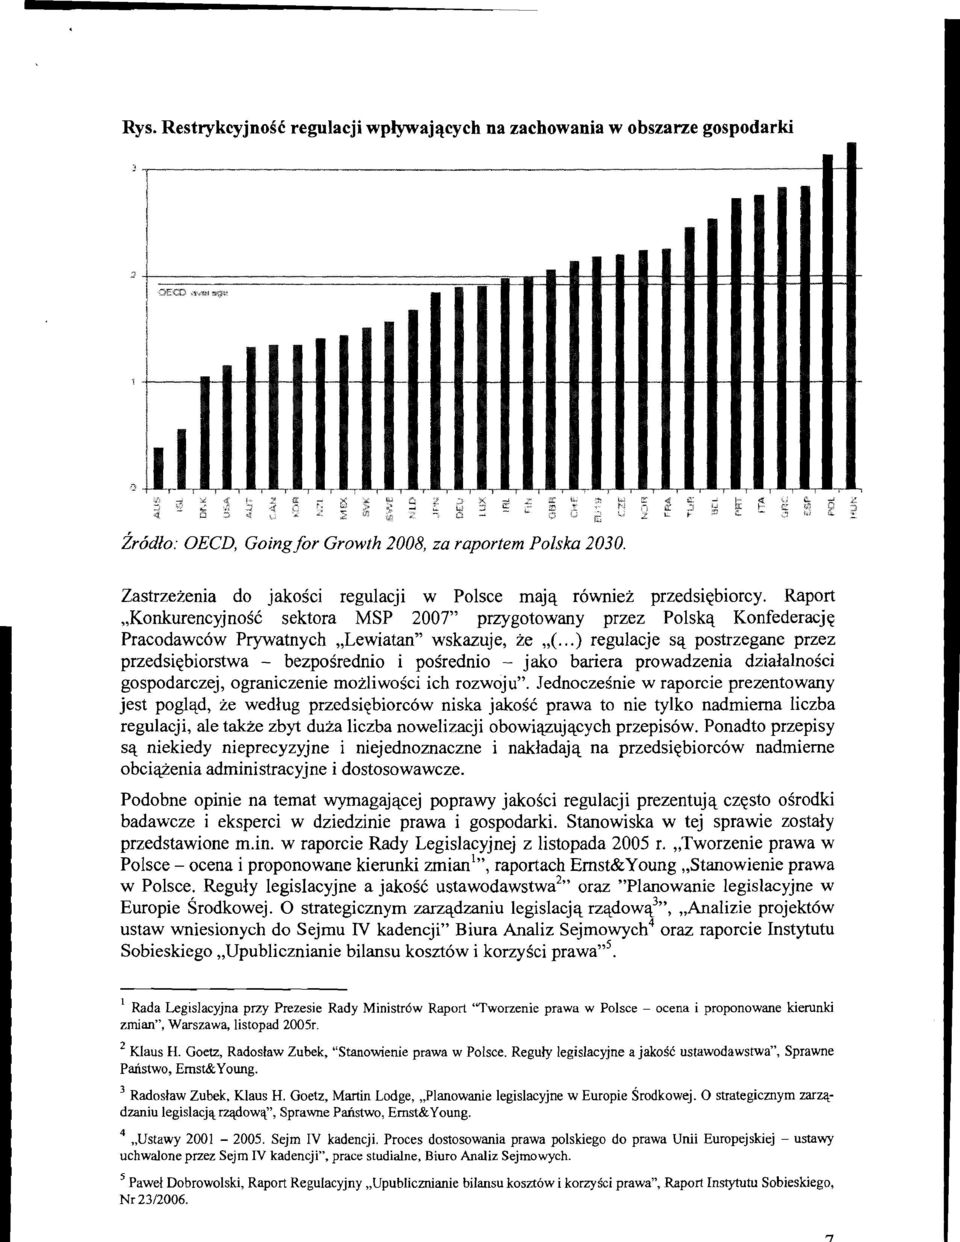 Raport,,KonkurencyjnoSC sektora MSP 2007" przygotowany przez Polskq Konfederacjq Pracodawcow Prywatnych,,LewiatanV wskazuje, ze,,(.